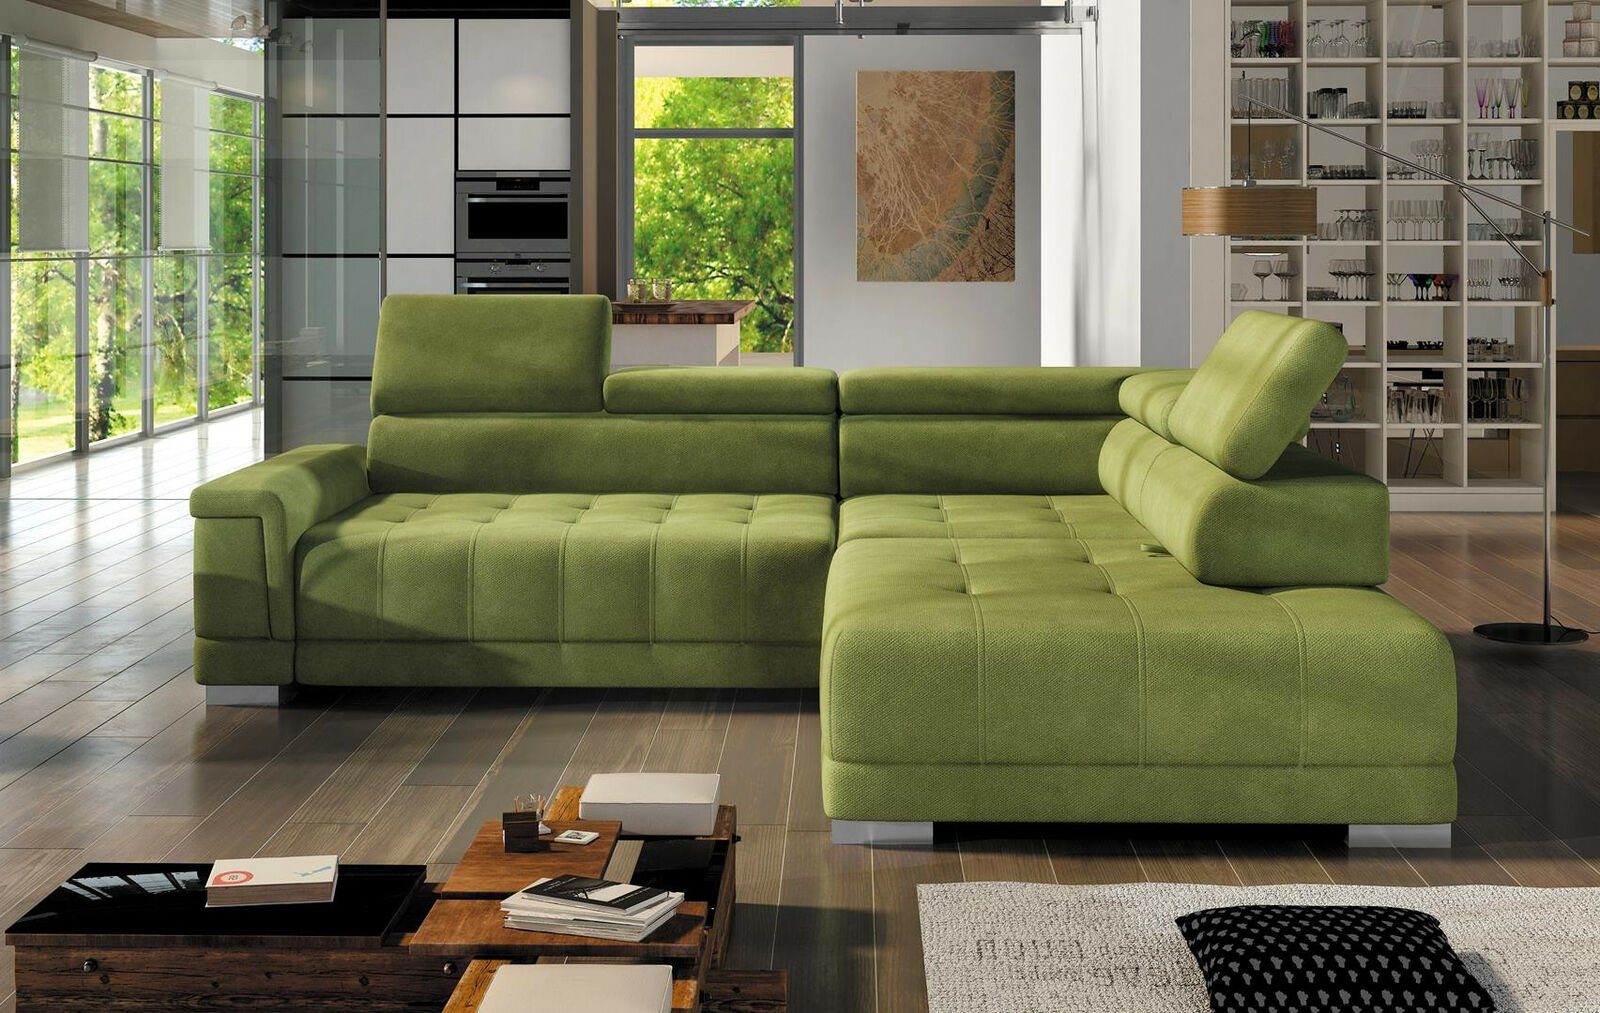 JVmoebel Ecksofa, Ecksofa L Form Couch Wohnlandschaft Sofa Eck Design Modern Grün